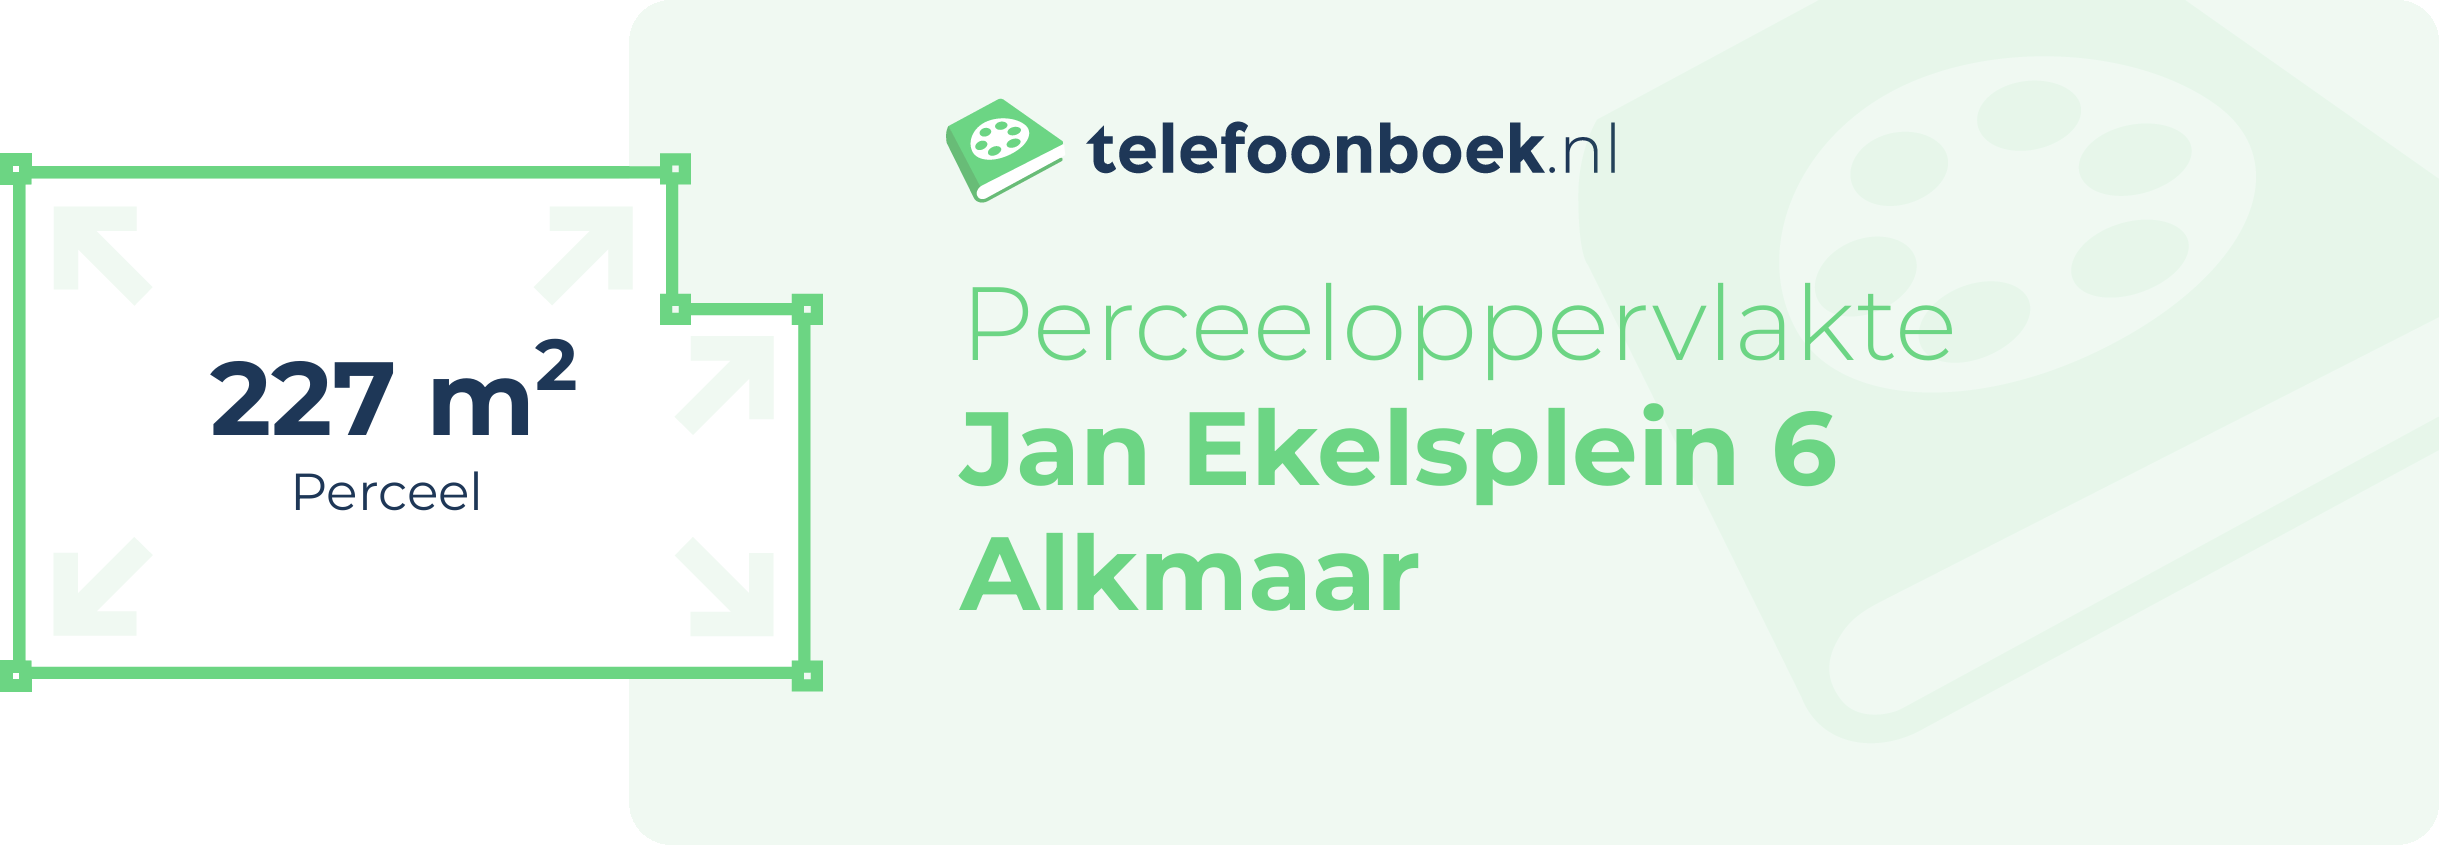 Perceeloppervlakte Jan Ekelsplein 6 Alkmaar